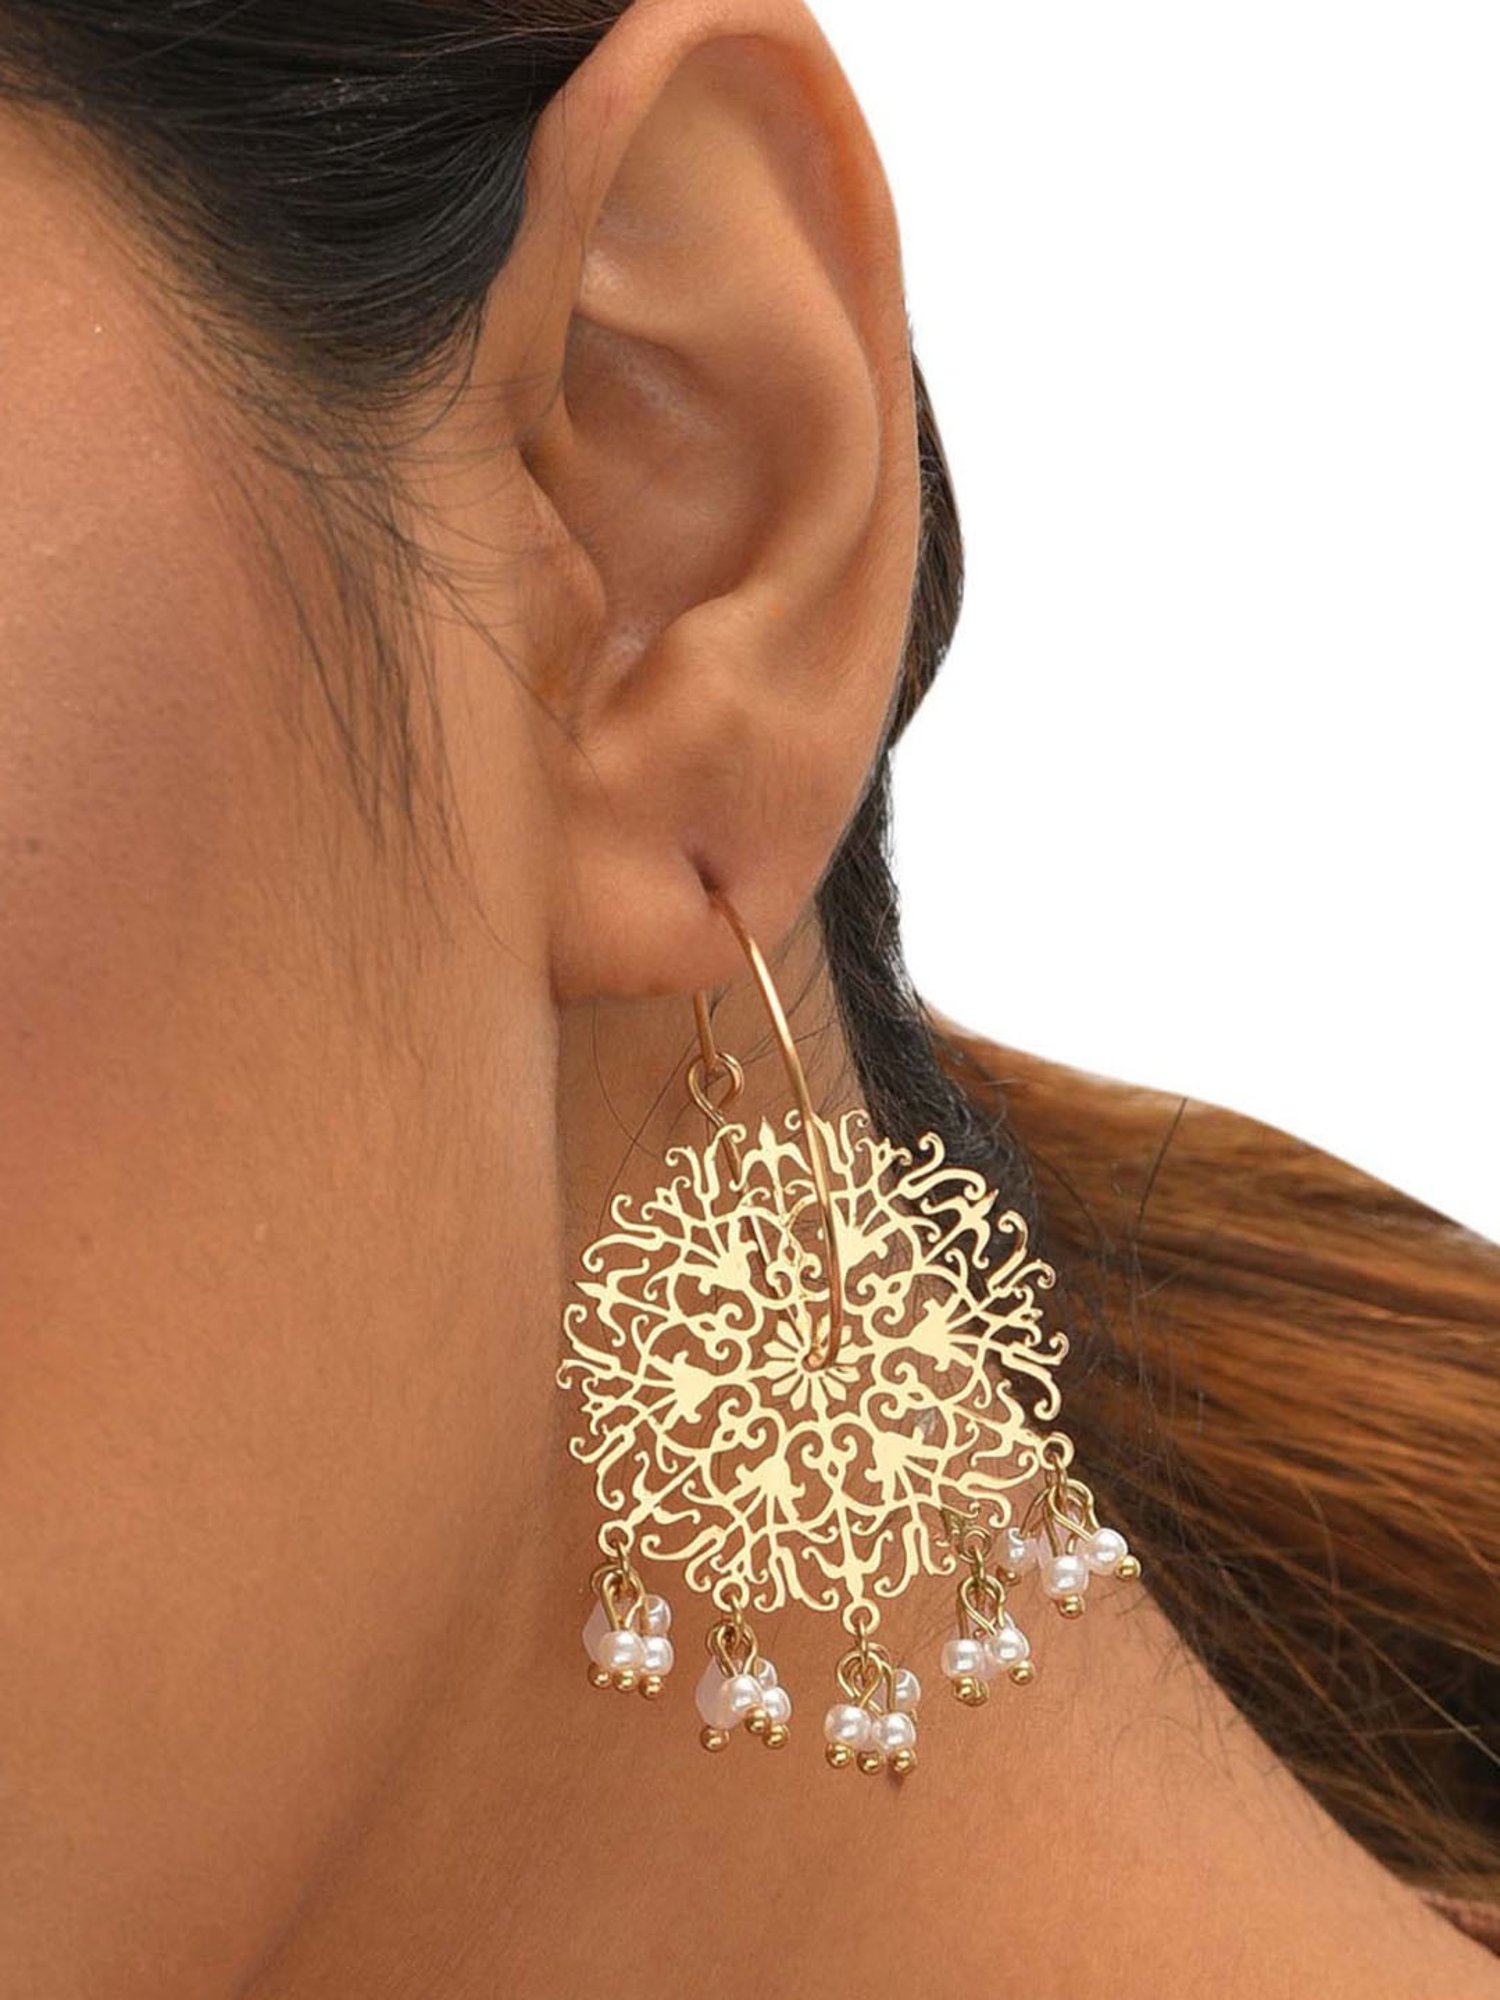 Gold Chandelier Earrings Filigree Leaf Leaves Earrings Dangle Cut Out  Pattern Lightweight Long Shiny Gold Leaves  Wish